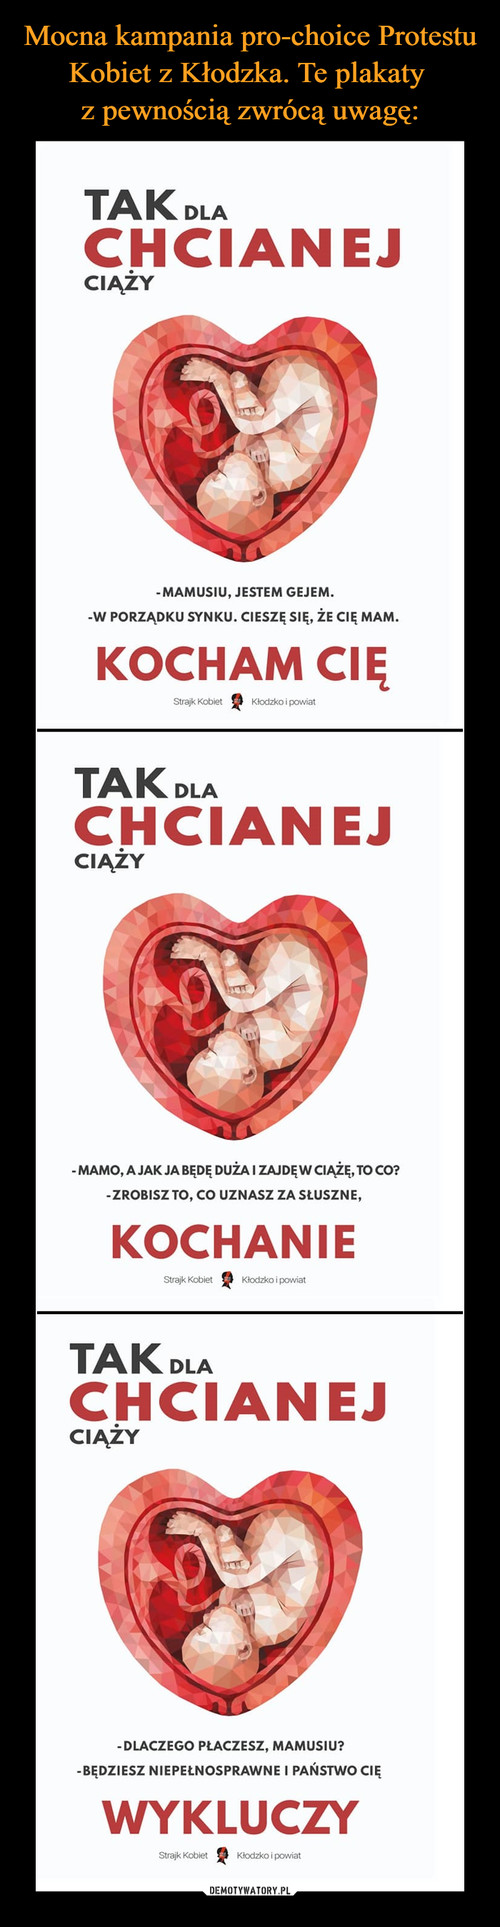 Mocna kampania pro-choice Protestu Kobiet z Kłodzka. Te plakaty 
z pewnością zwrócą uwagę: